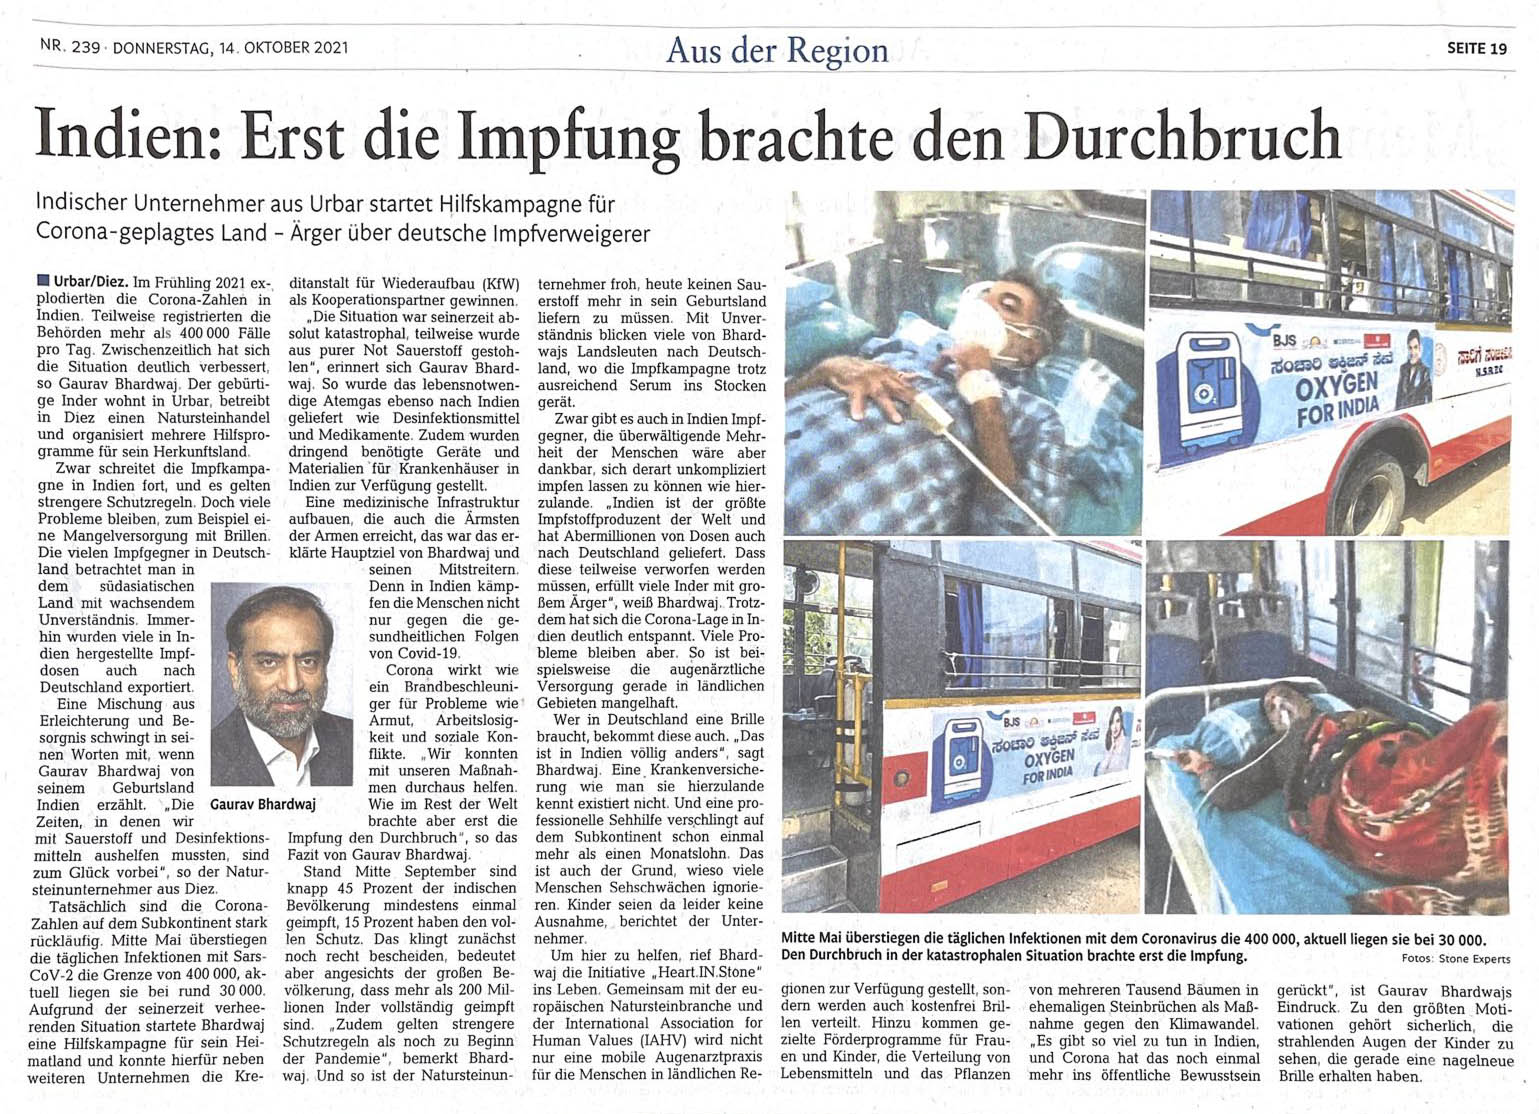 Article in Rhein Zeitung